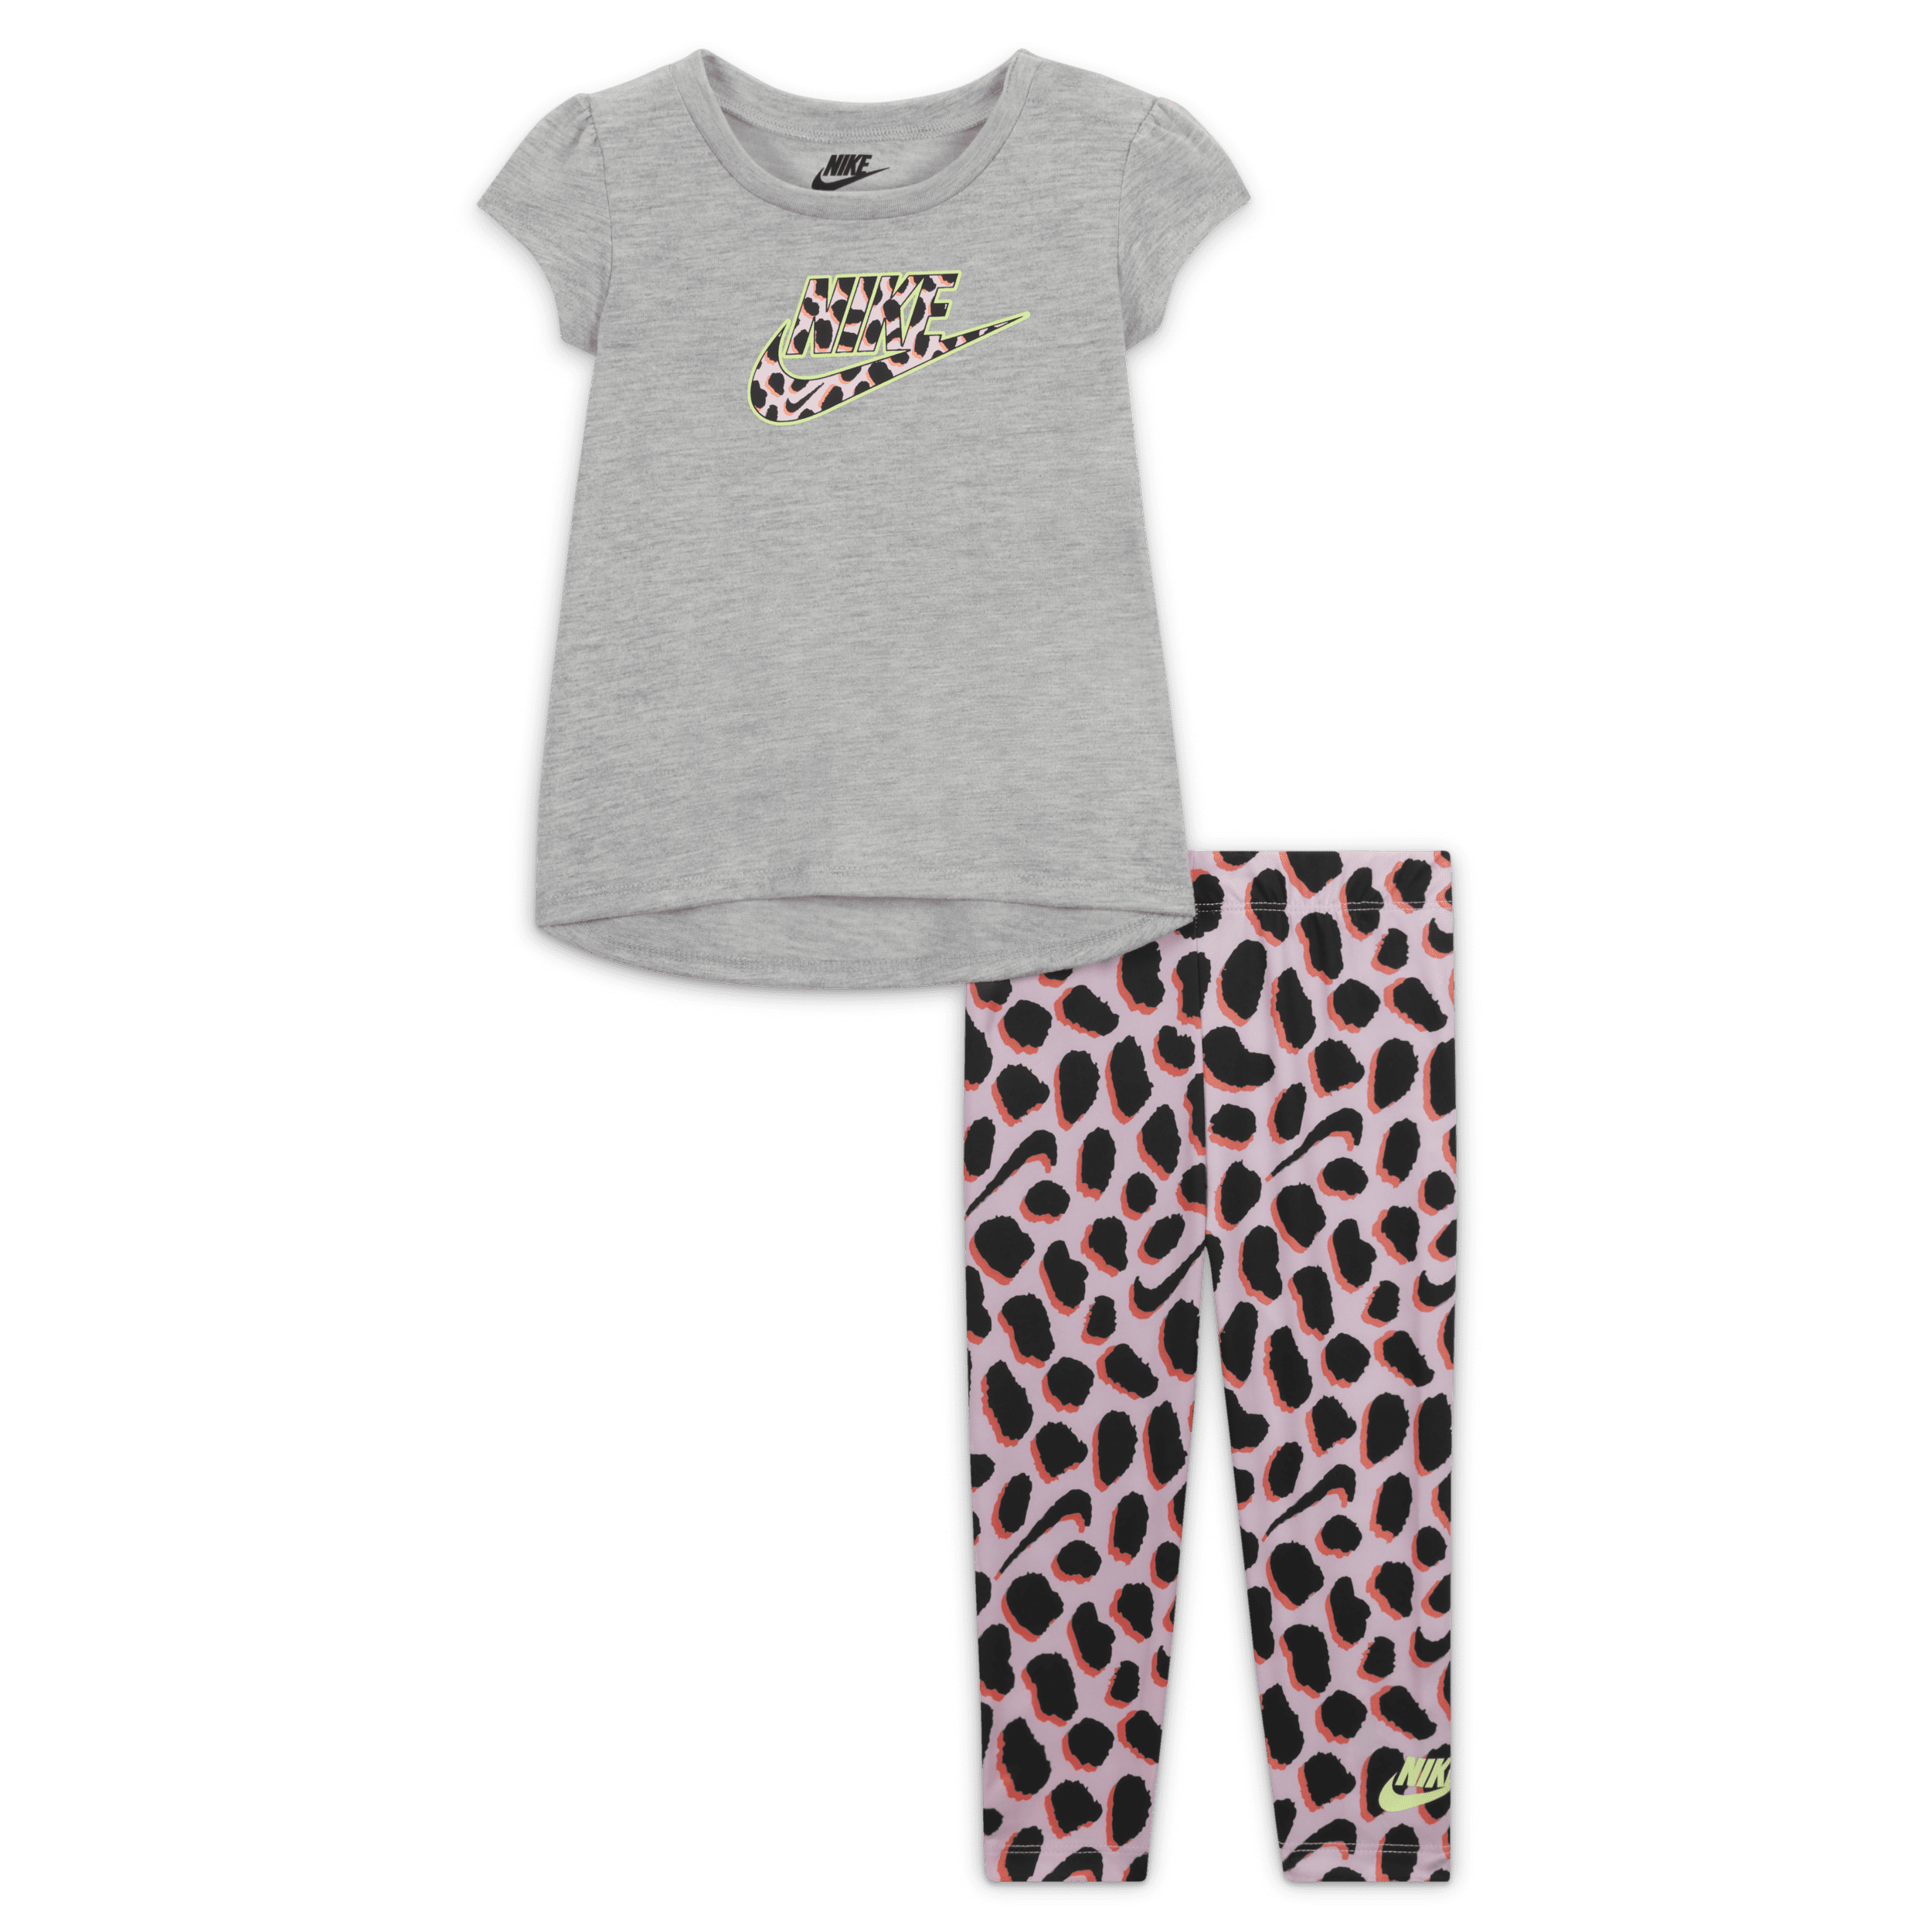 Completo t-shirt e leggings Nike - Bebè (12-24 mesi) - Rosa